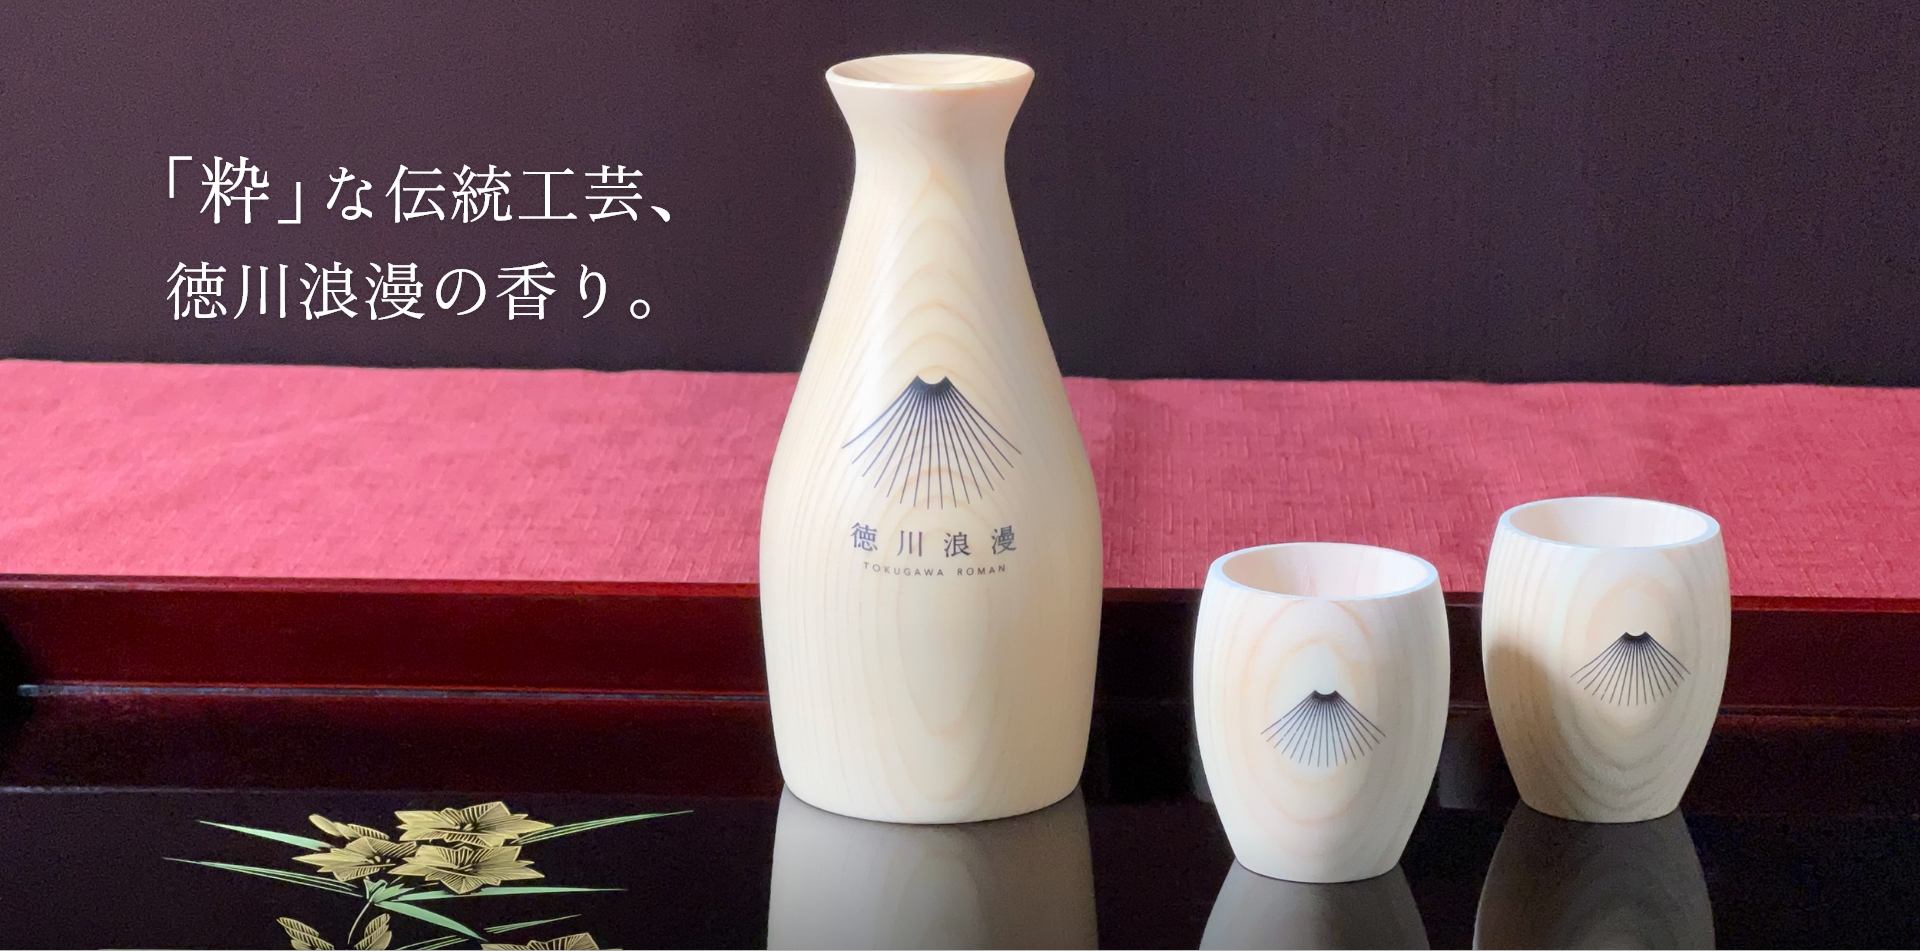 「粋」な伝統工芸、徳川浪漫の香り。